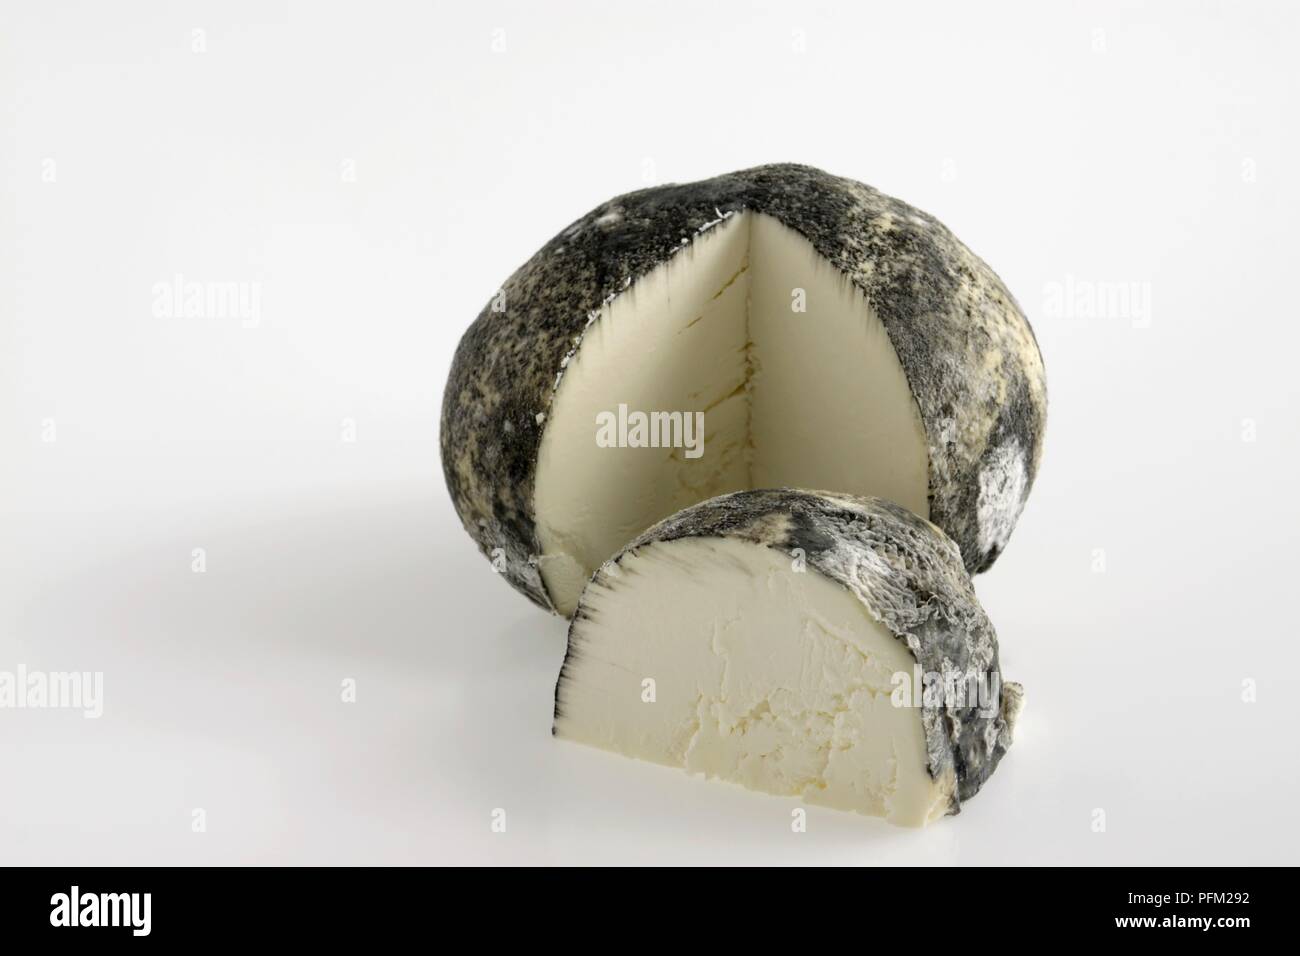 Meubles de série de Ventadour français du fromage de chèvre avec la moisissure blanche sur écorce gris Banque D'Images